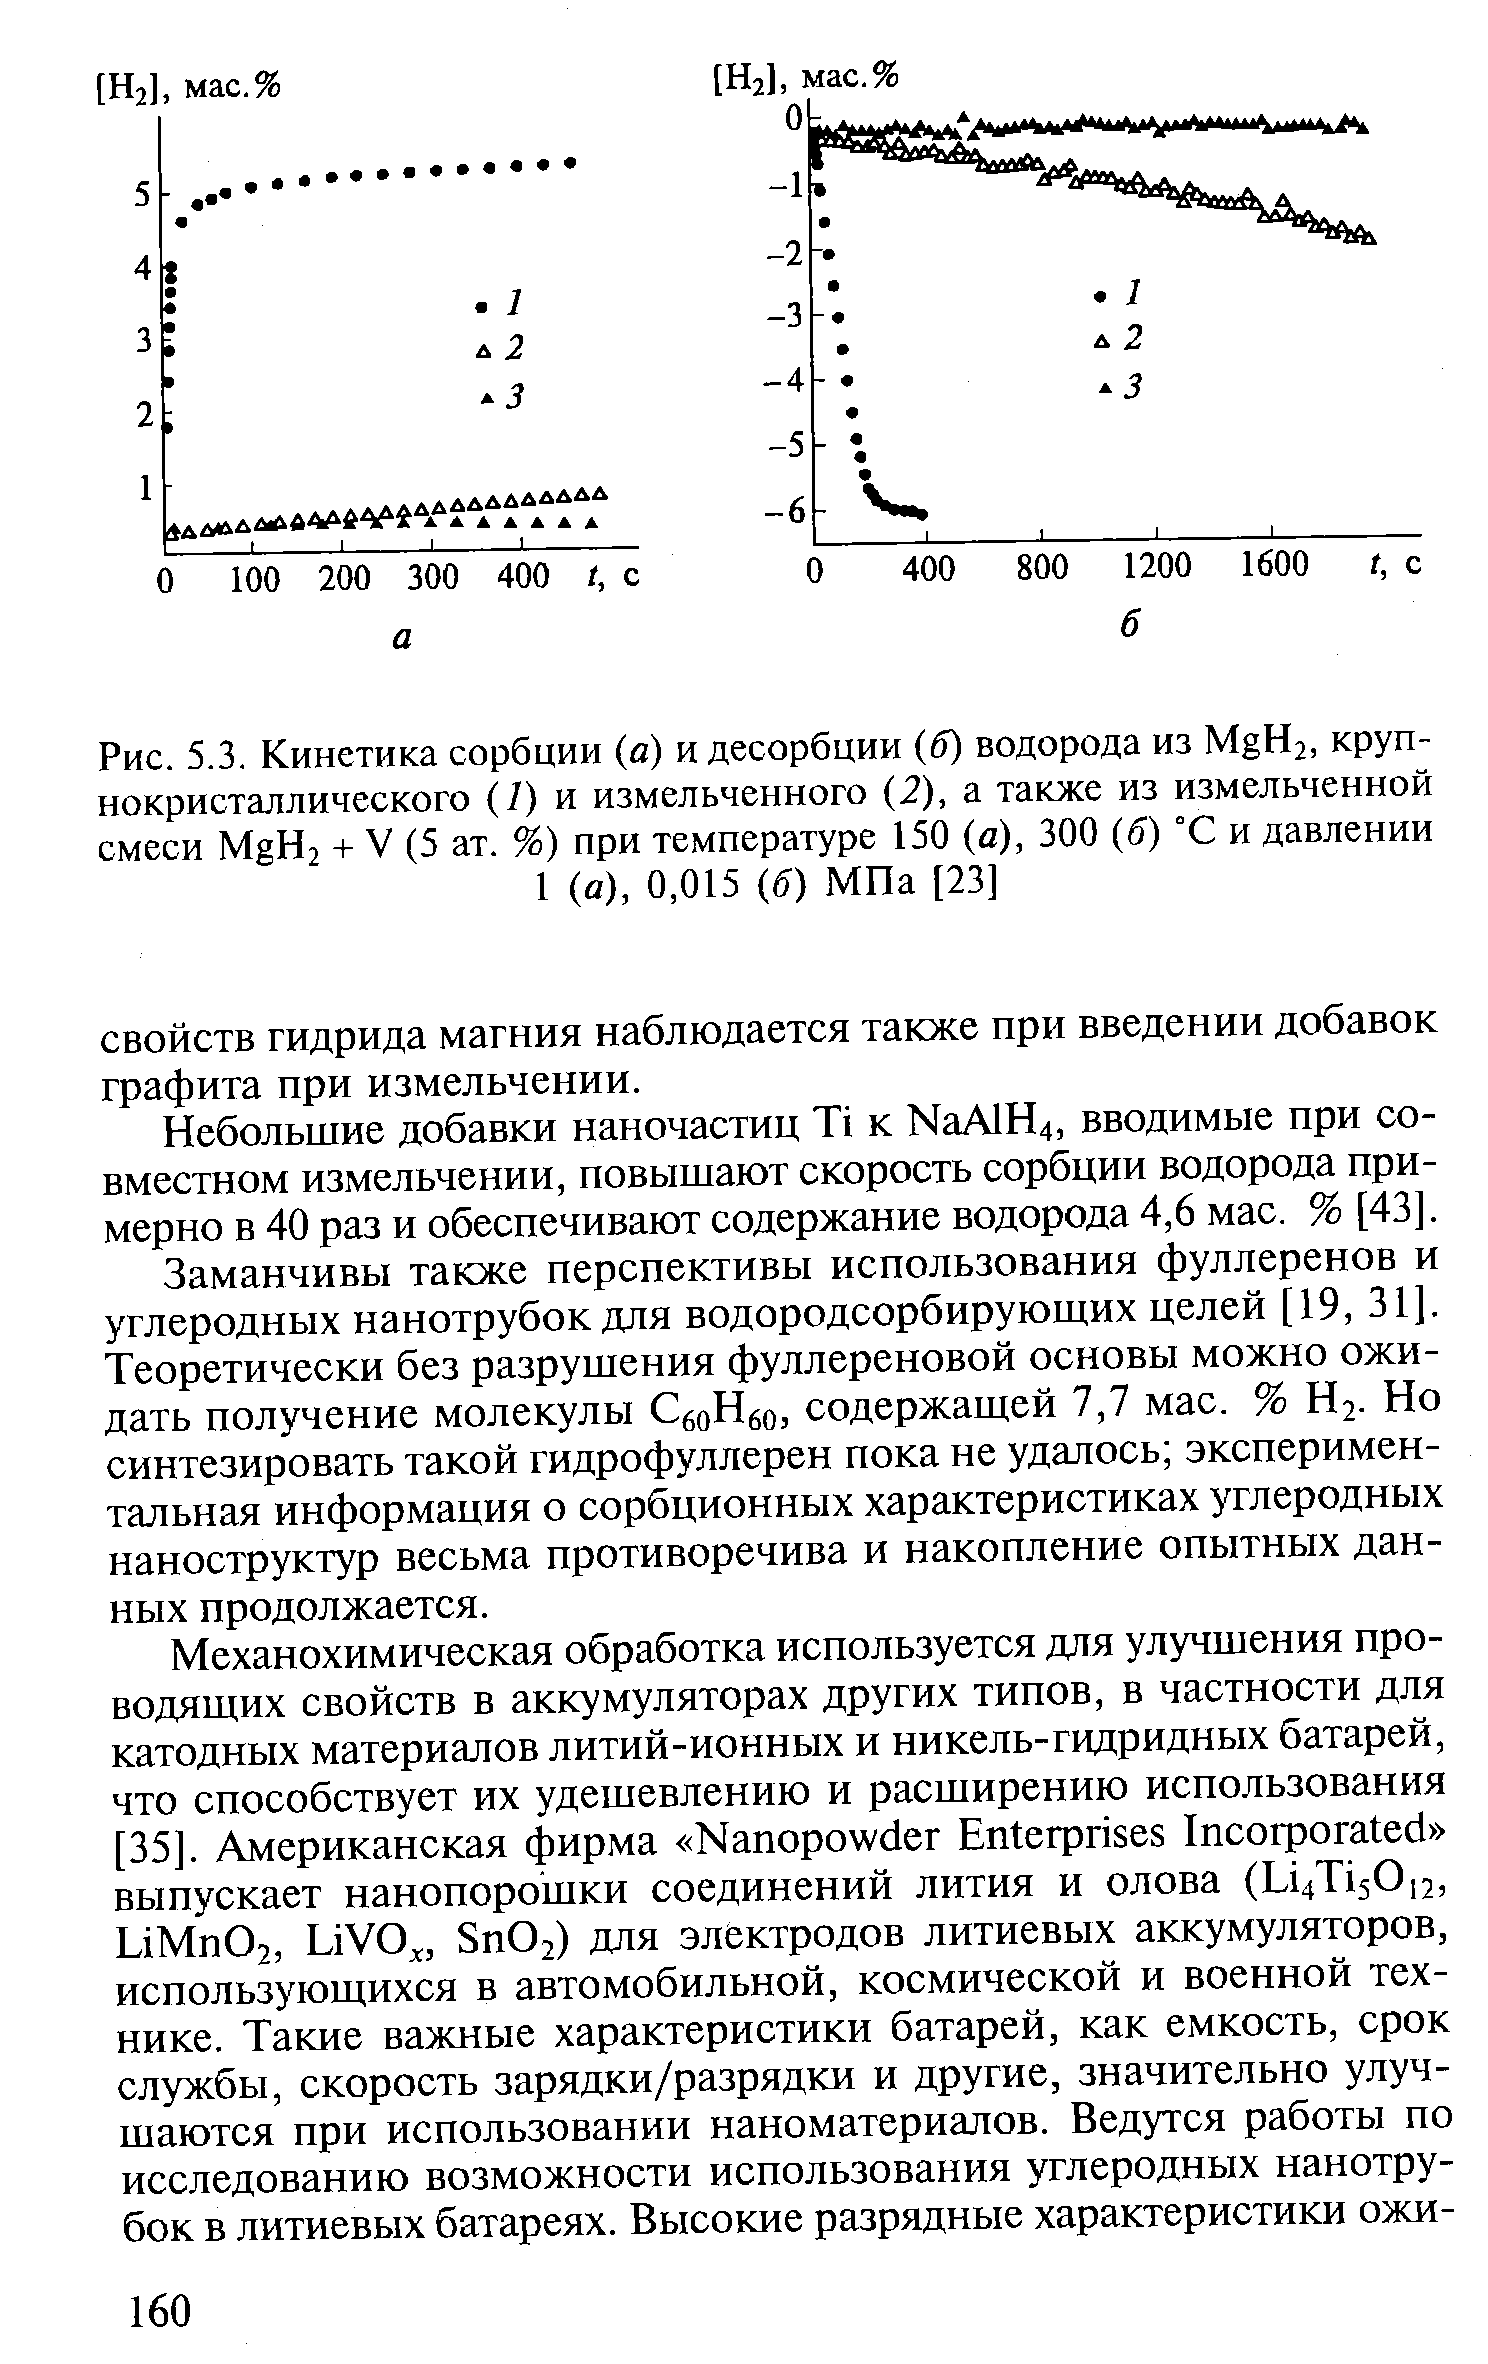 Рис. 5.3. Кинетика сорбции (а) и десорбции (б) водорода из MgH2, крупнокристаллического (/) и измельченного (2), а также из измельченной смеси MgH2 + V (5 ат. %) при температуре 150 (а), 300 (б) °С и давлении 1 (а), 0,015 (б) МПа [23]
